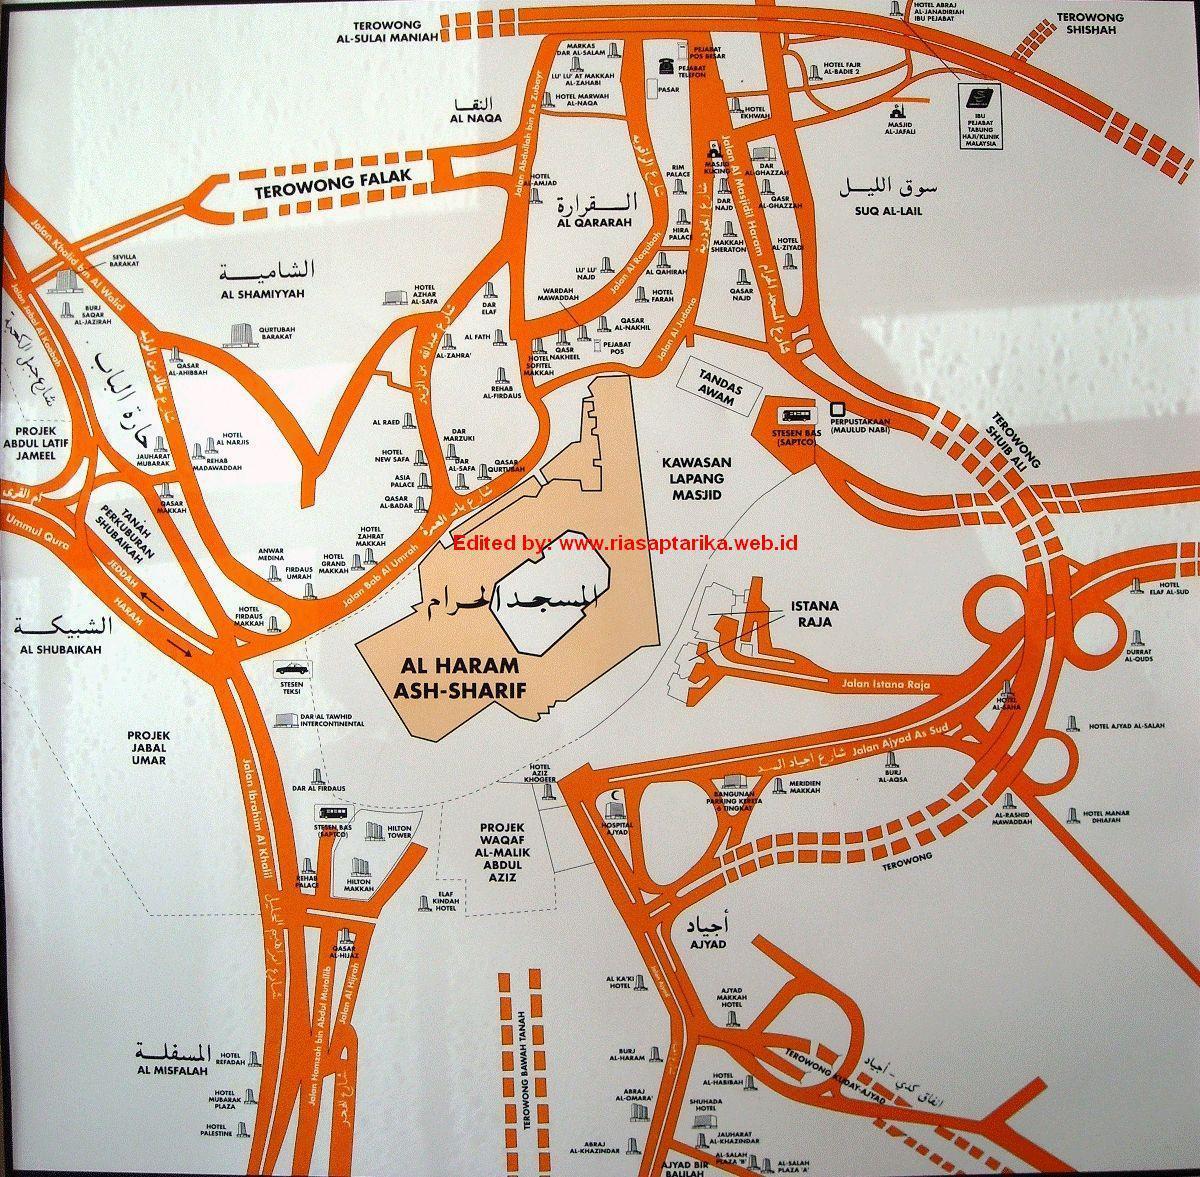 mapa de misfalah Makkah mapa